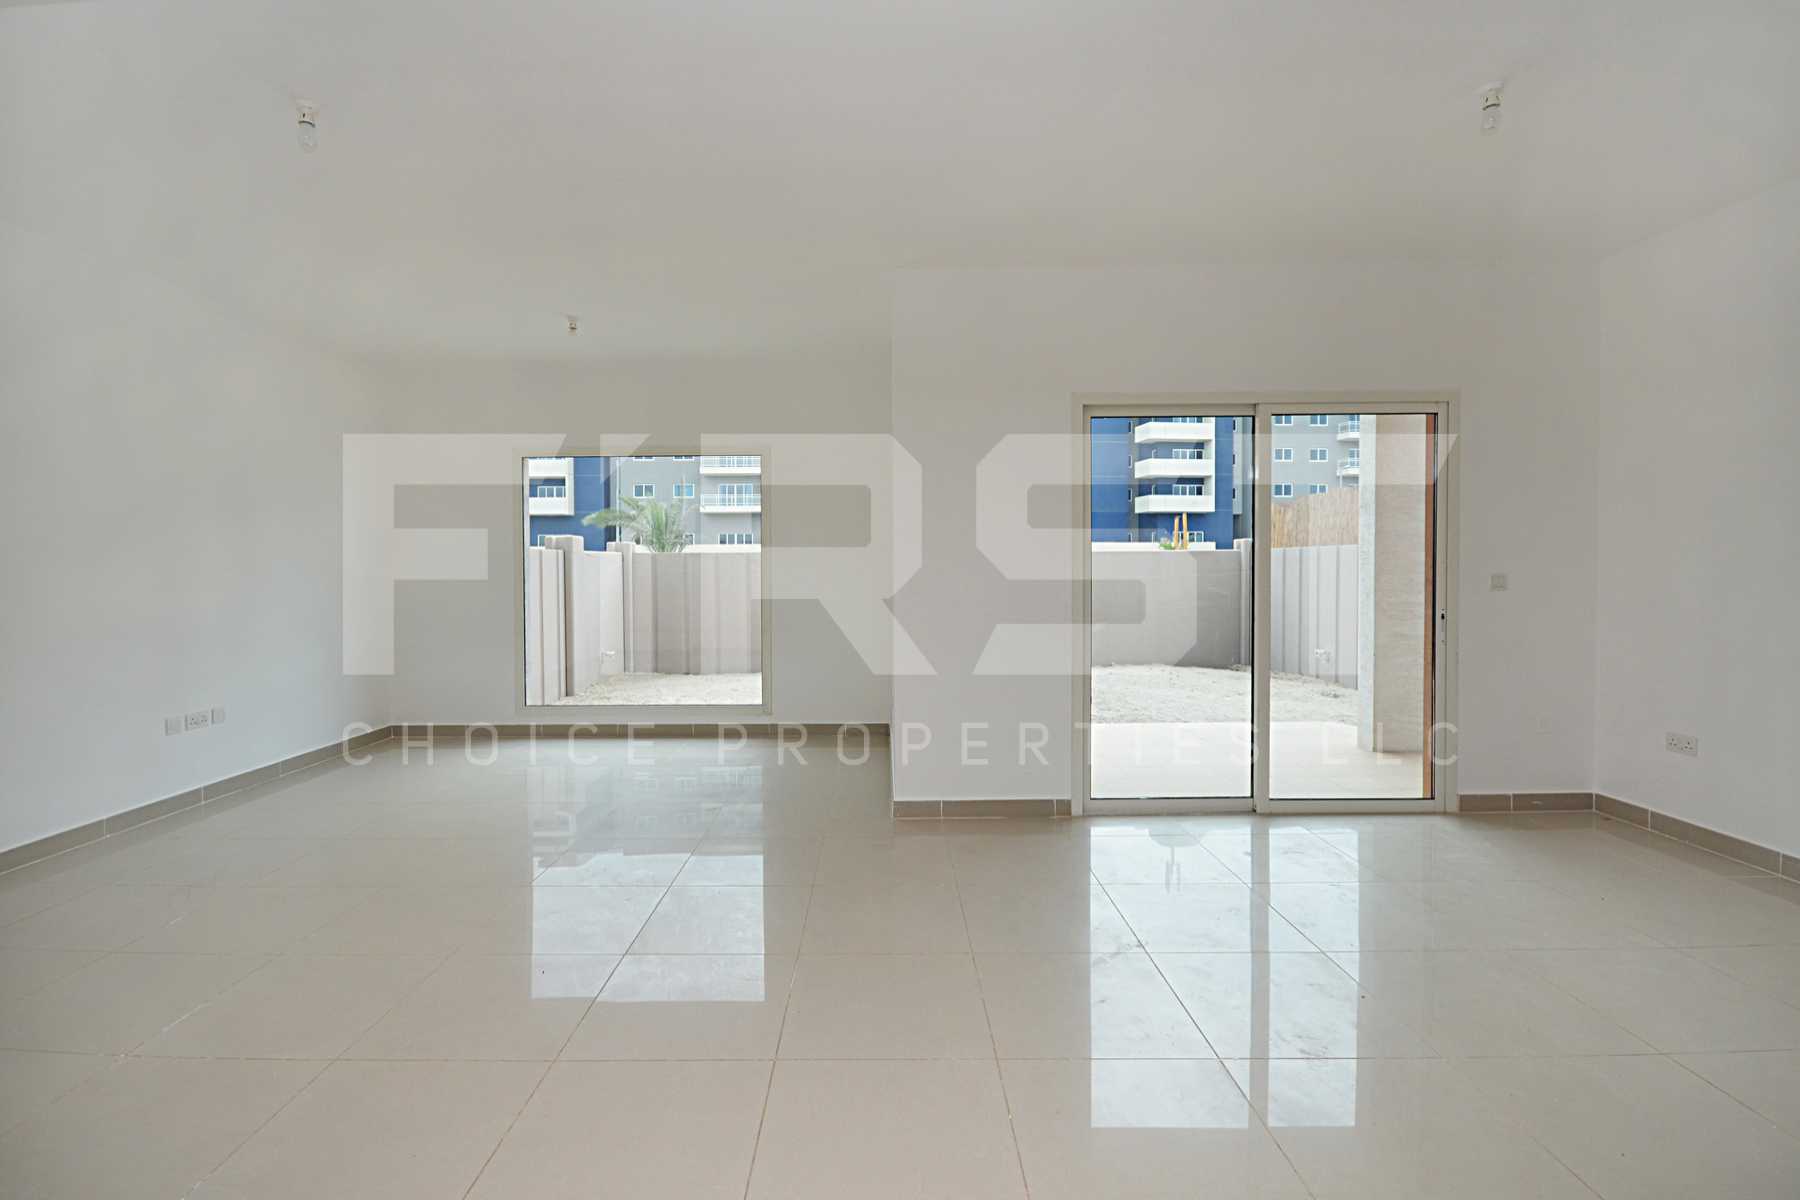 Internal Photo of 4 Bedroom Villa in Al Reef Villas Al Reef Abu Dhabi UAE 265.5 sq.m 2858 sq.ft (11).jpg